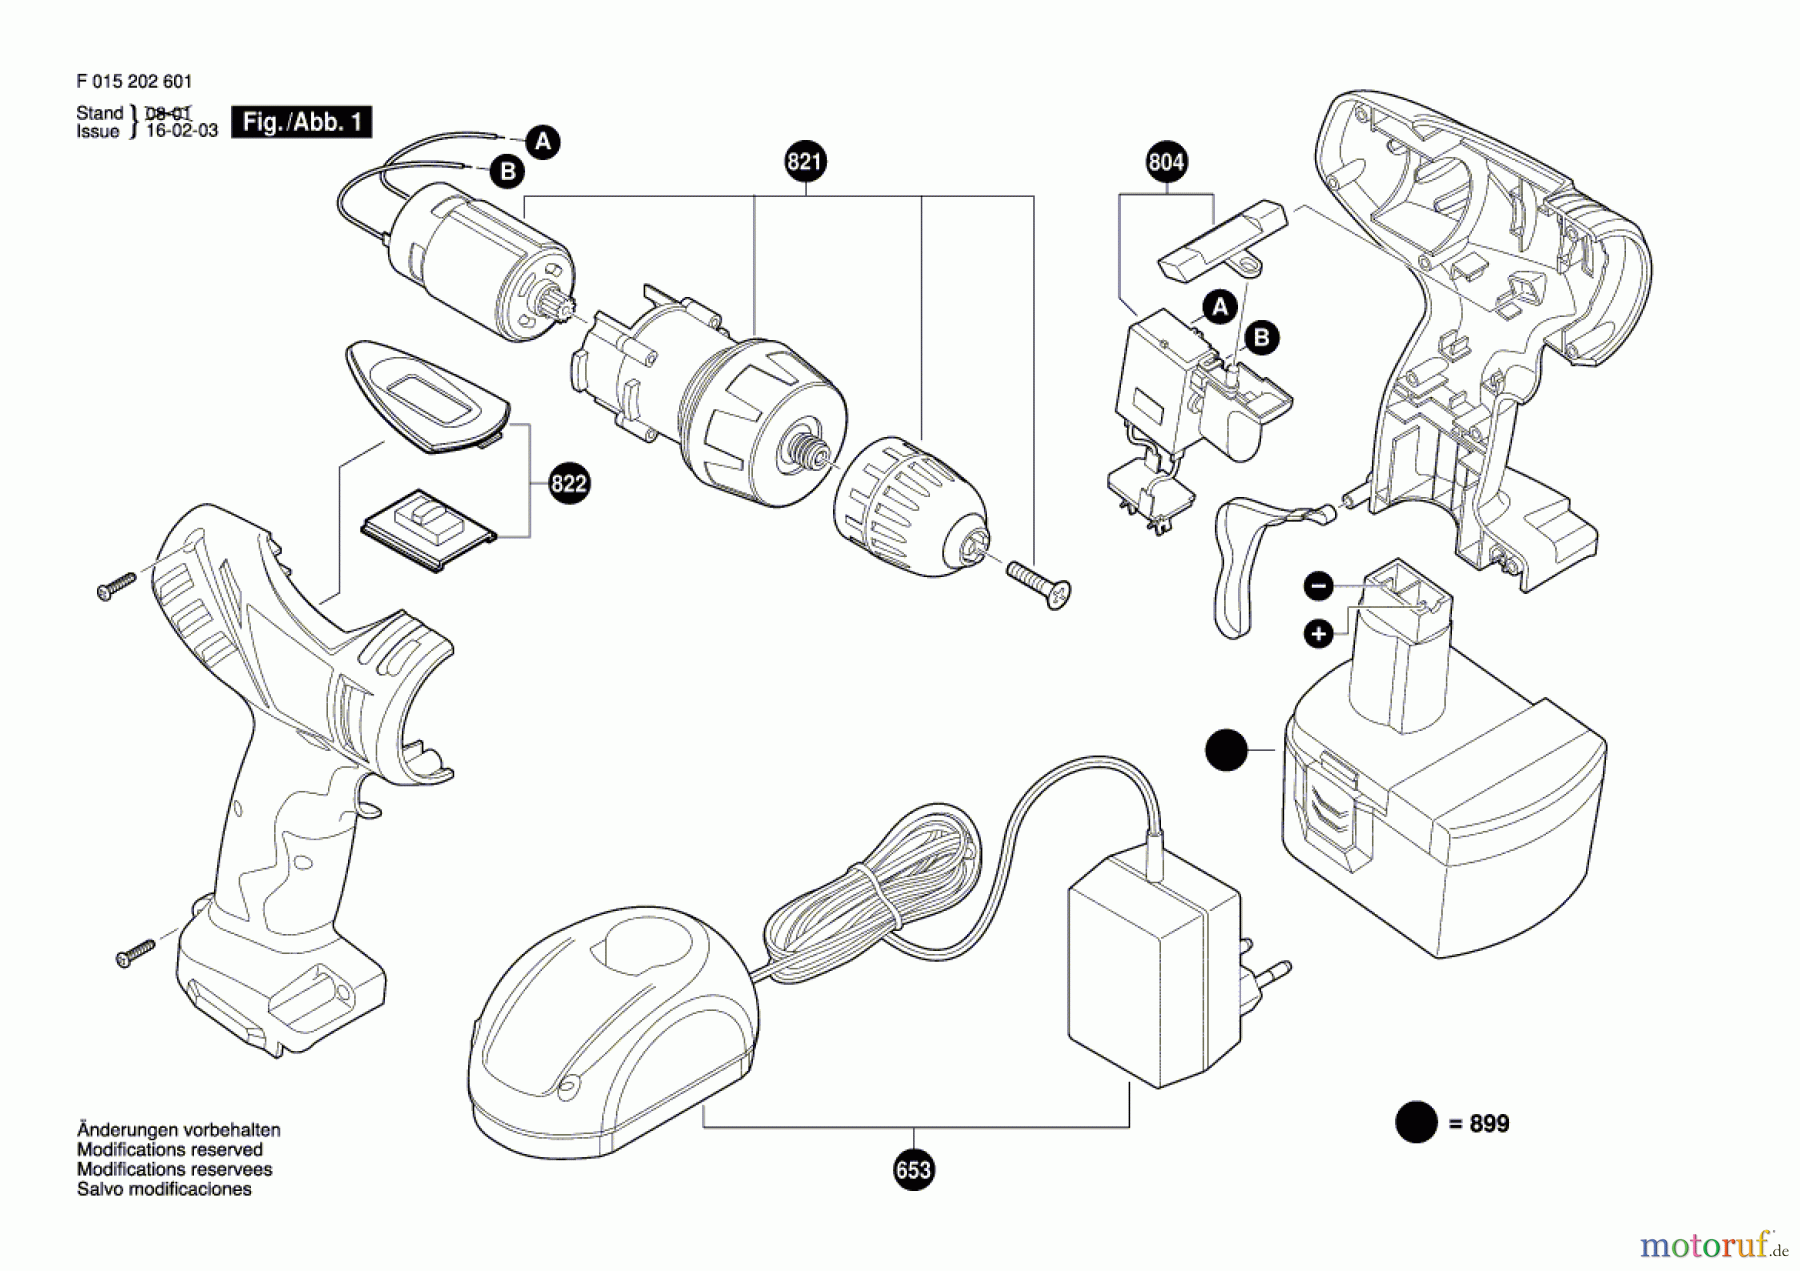  Bosch Akku Werkzeug Akku-Bohrschrauber 2027 Seite 1